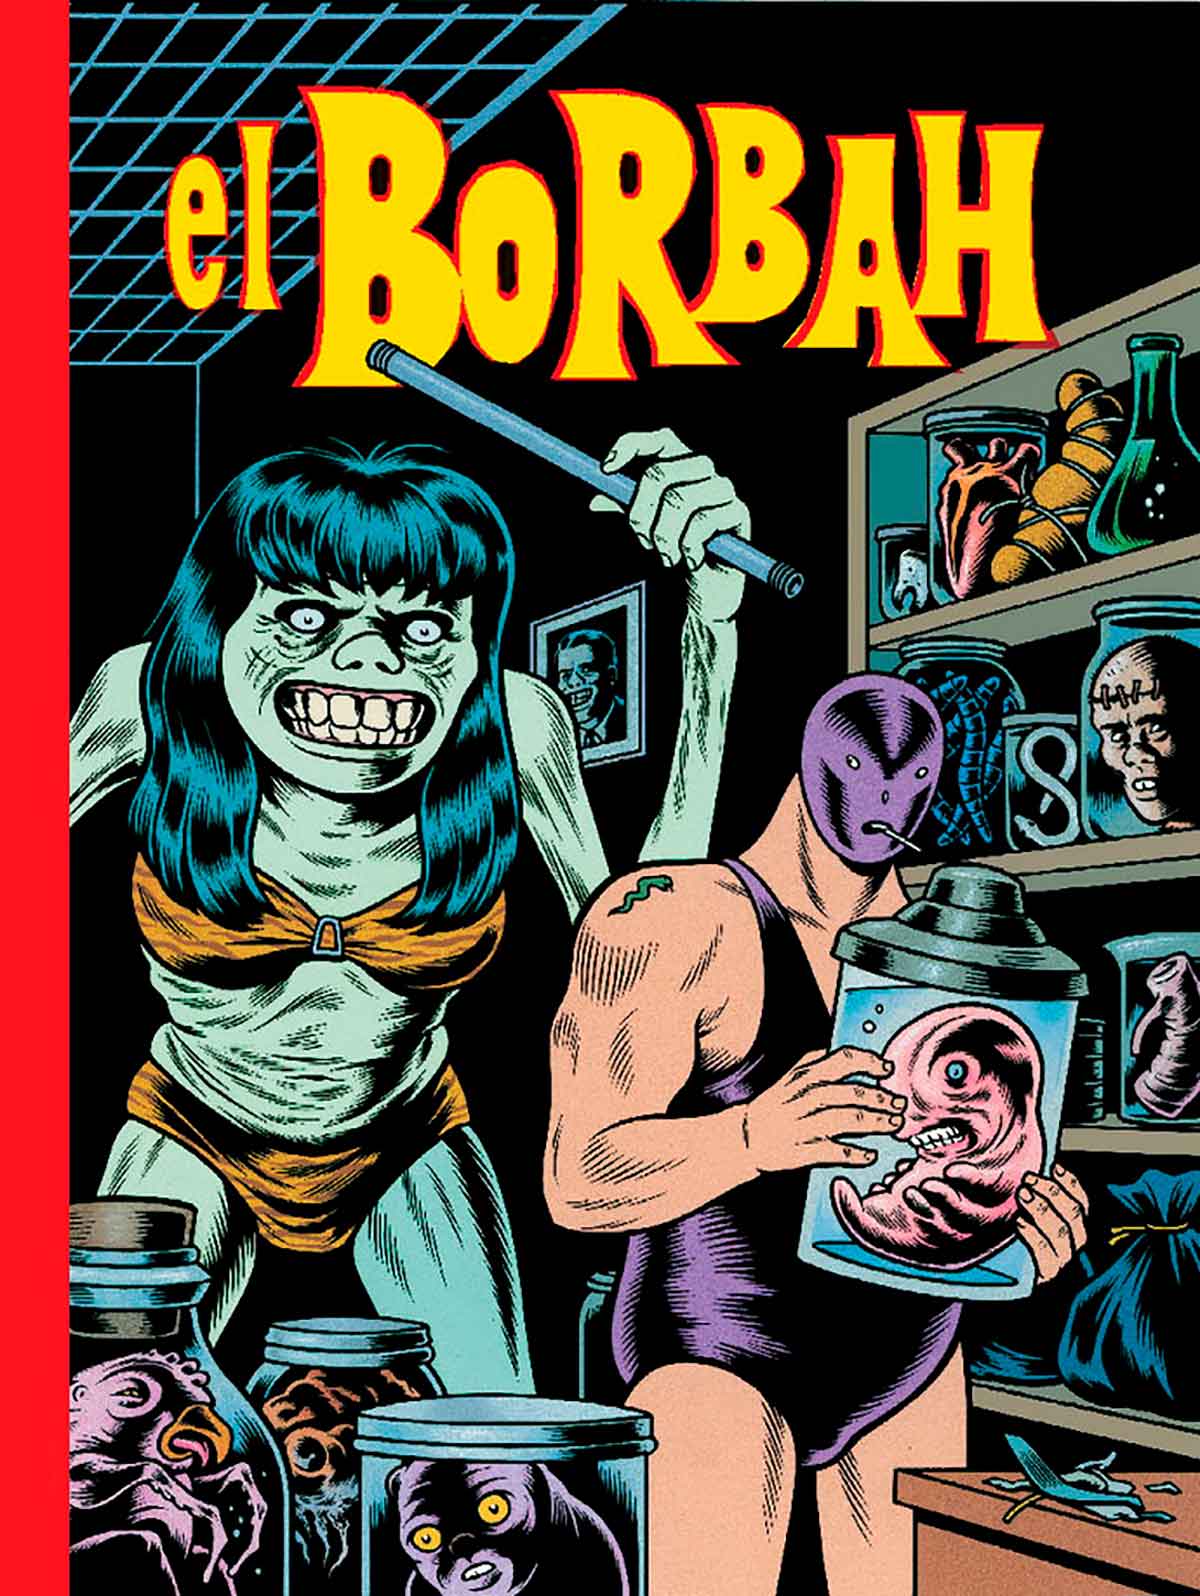 Portada de El Borbah, historieta de Charles Burns